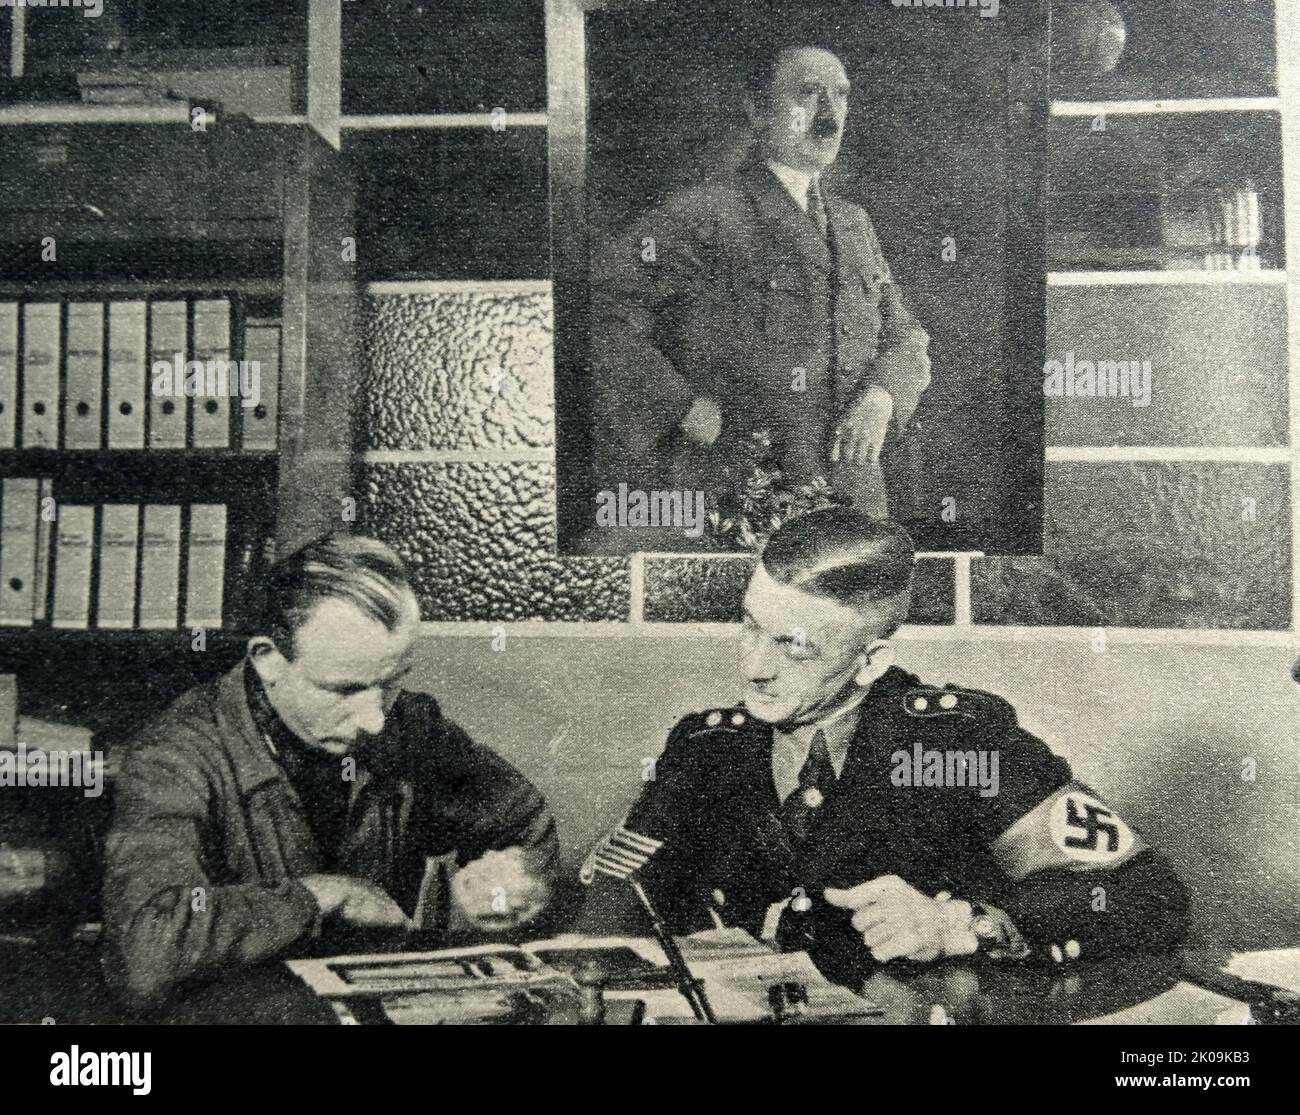 Der Nazi-Sturmsoldat Johann Laub konsultiert die von einem Nazi-Beamten unterstützte Ferienliteratur. Die Sturmabteilung war der ursprüngliche paramilitärische Flügel der Nazi-Partei. Es spielte eine wichtige Rolle bei Adolf Hitlers Aufstieg an die Macht in den Jahren 1920s und 1930s. Stockfoto